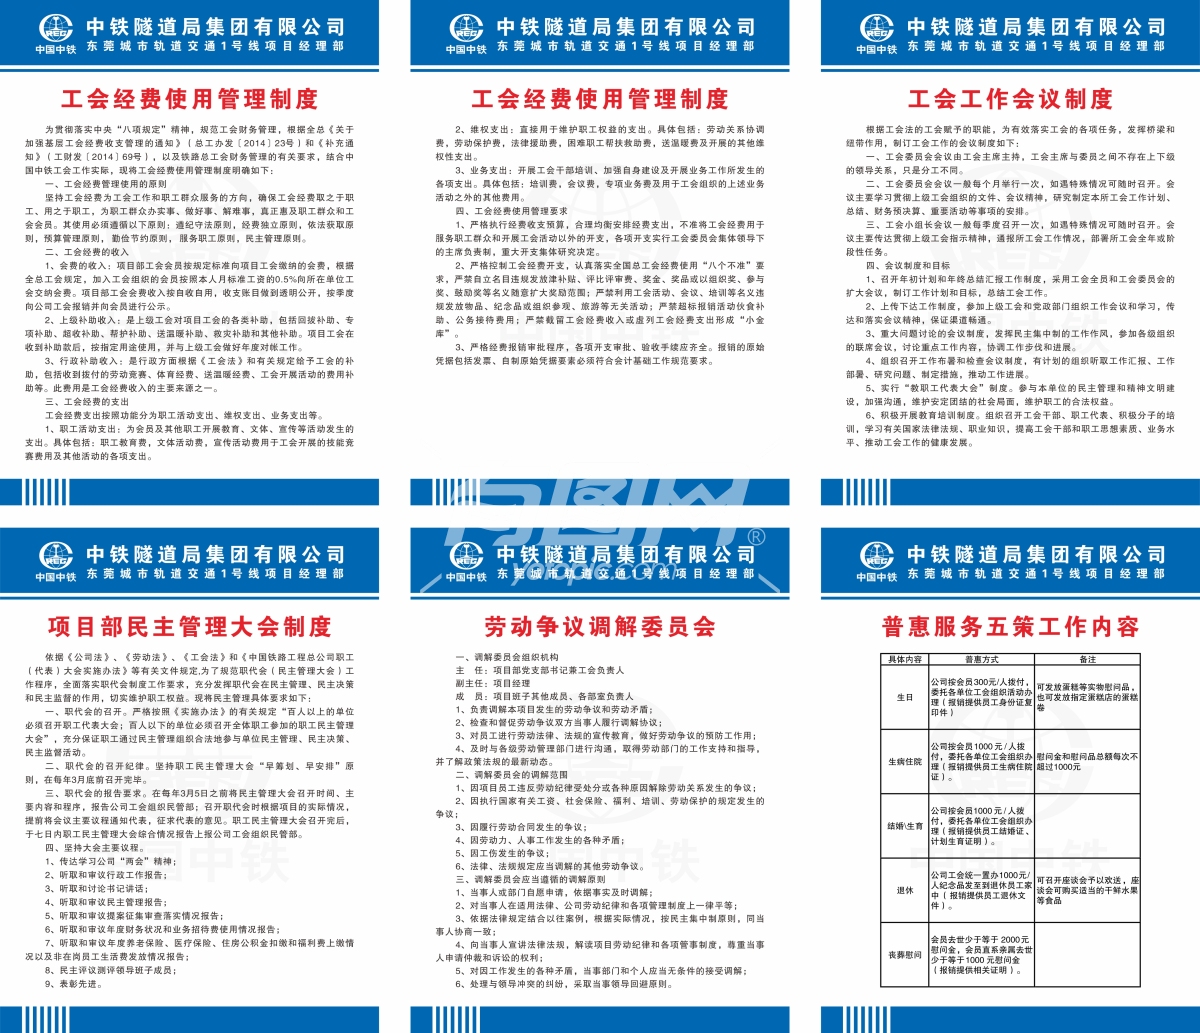 中国中铁工会民主大会管理制度图片